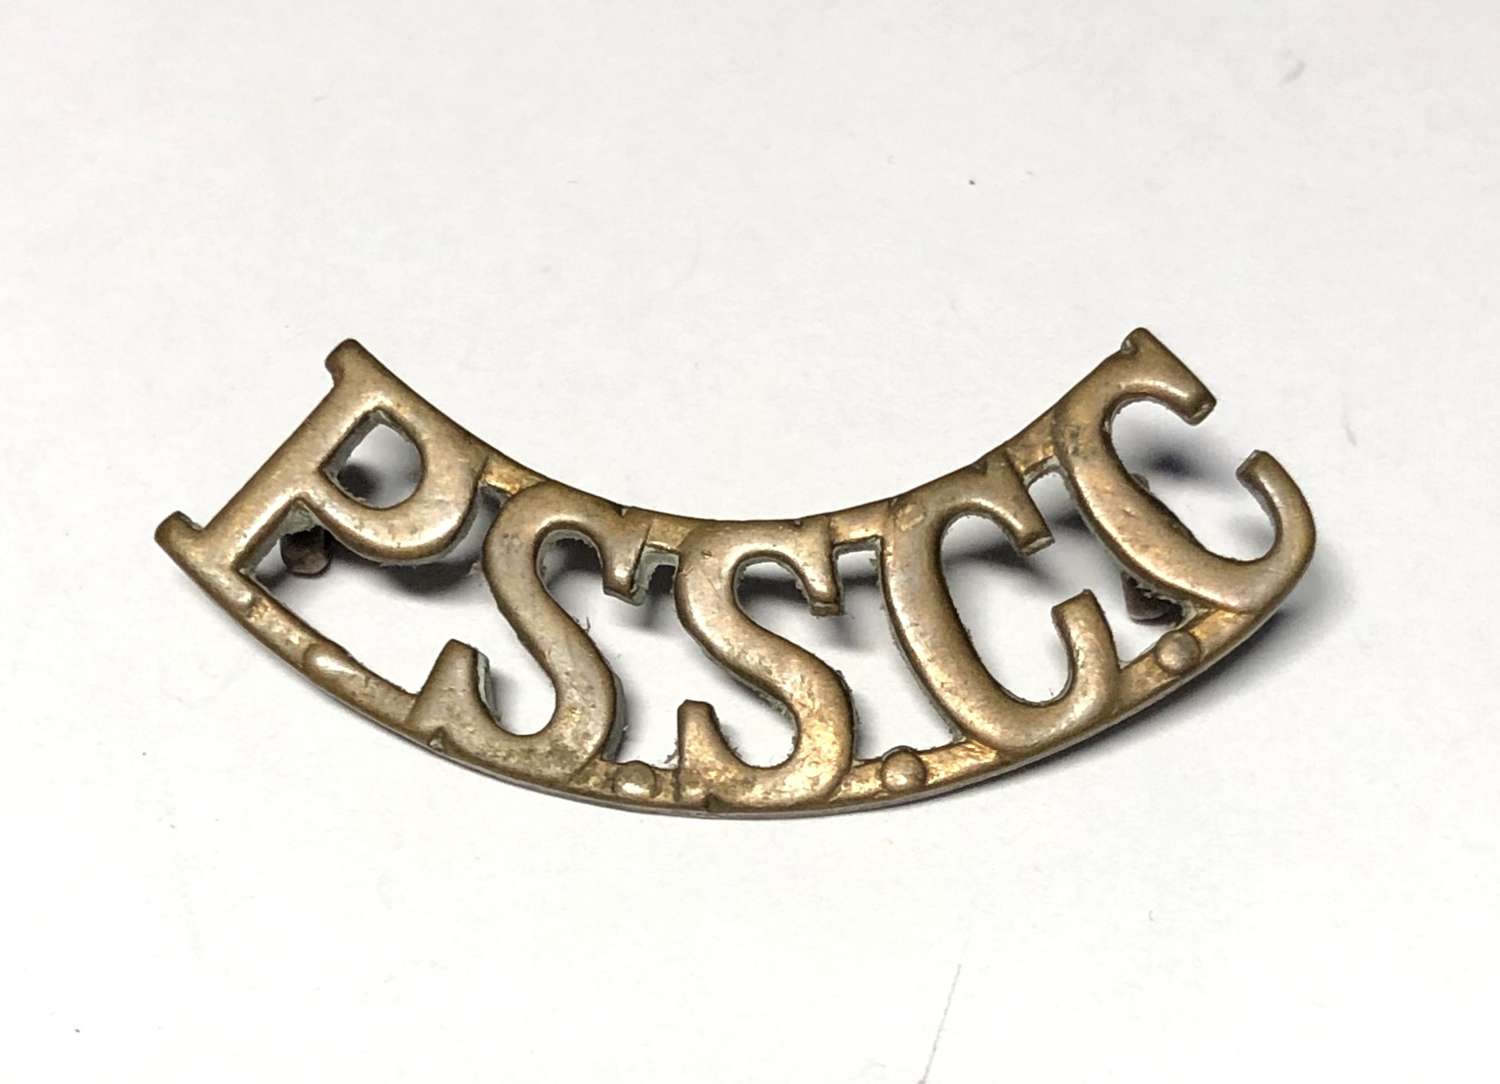 PSSCC (Public School Cadet Corps) brass shoulder title